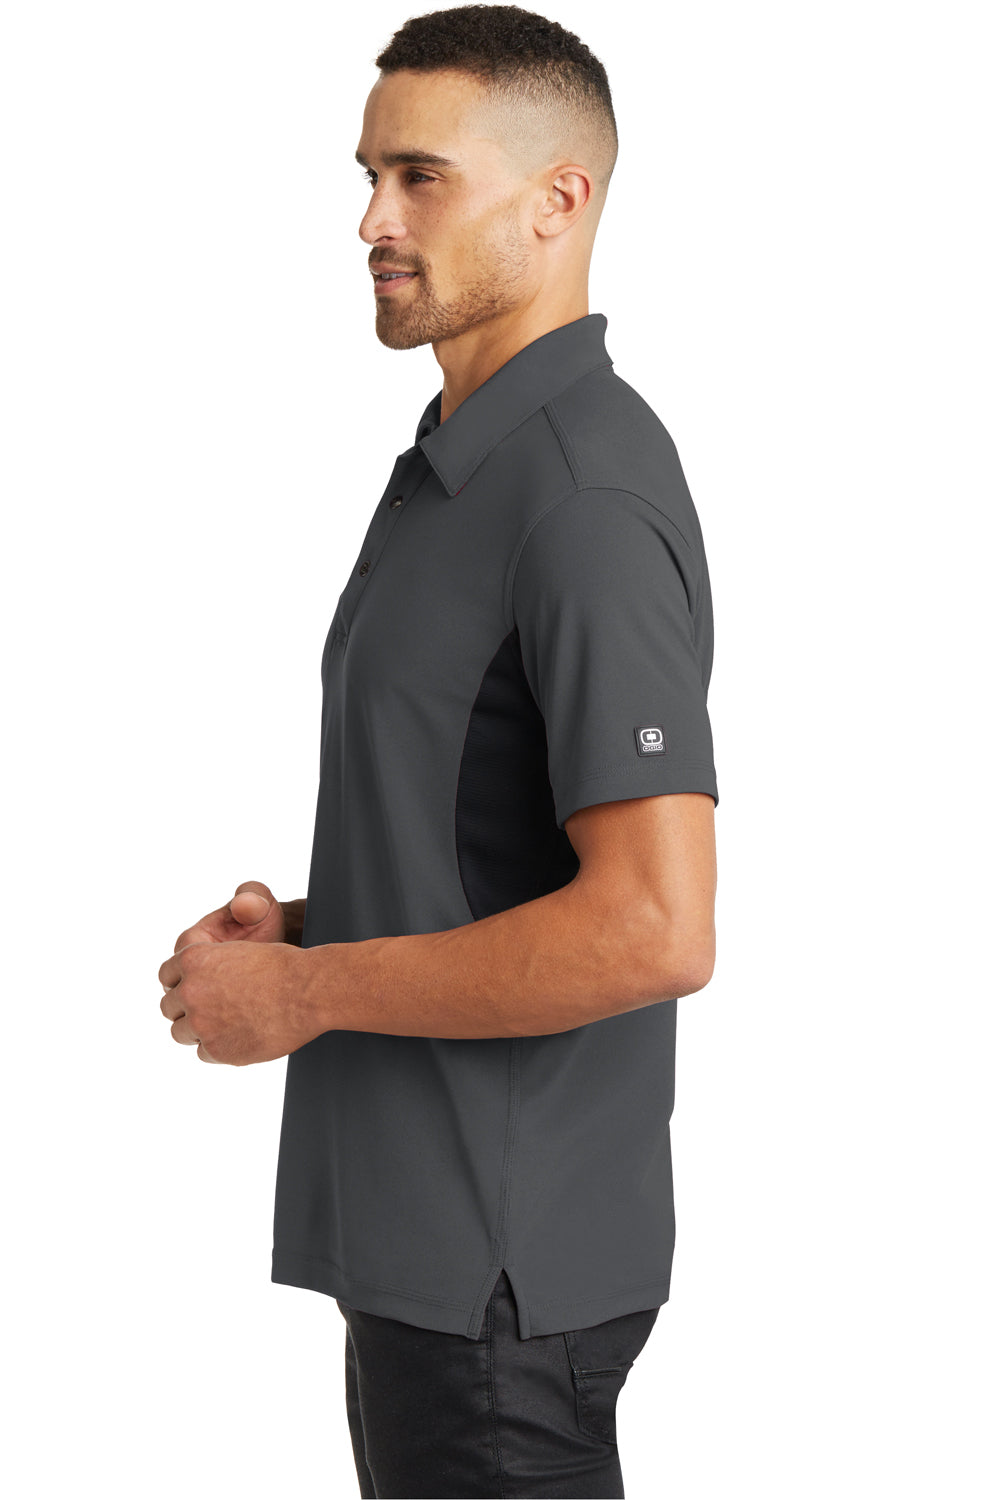 Ogio OG102 Mens Accelerator Moisture Wicking Short Sleeve Polo Shirt w/ Pocket Diesel Grey Side